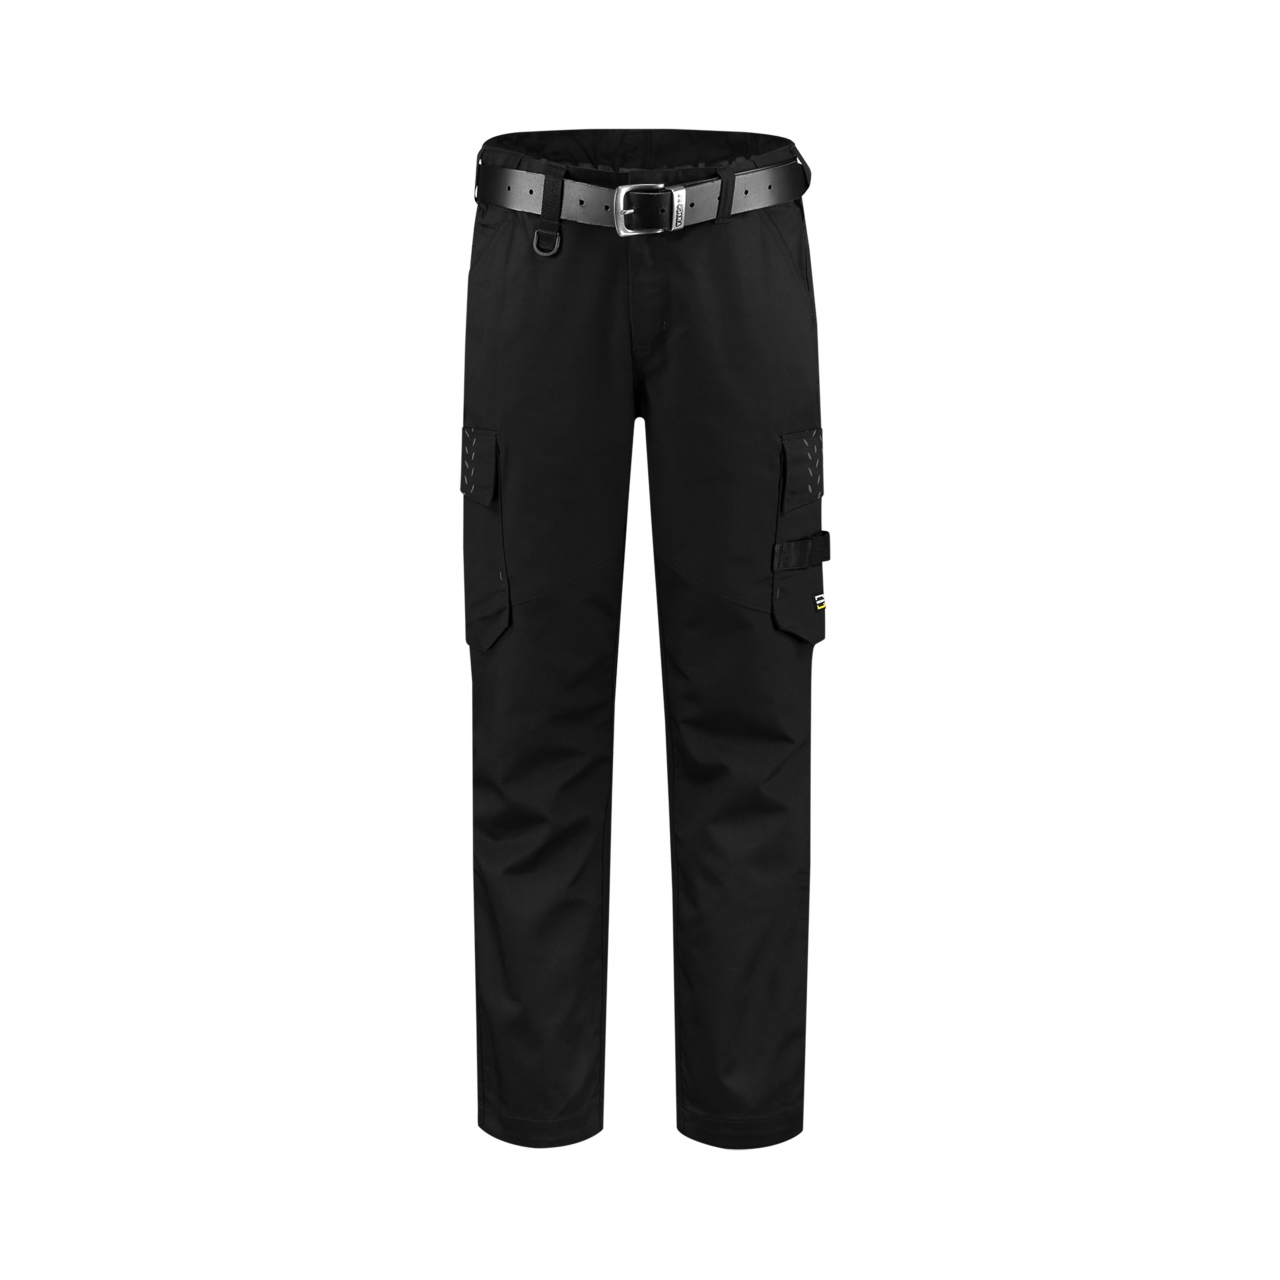 Pracovní kalhoty unisex Tricorp Work Pants Twill - černé, 47